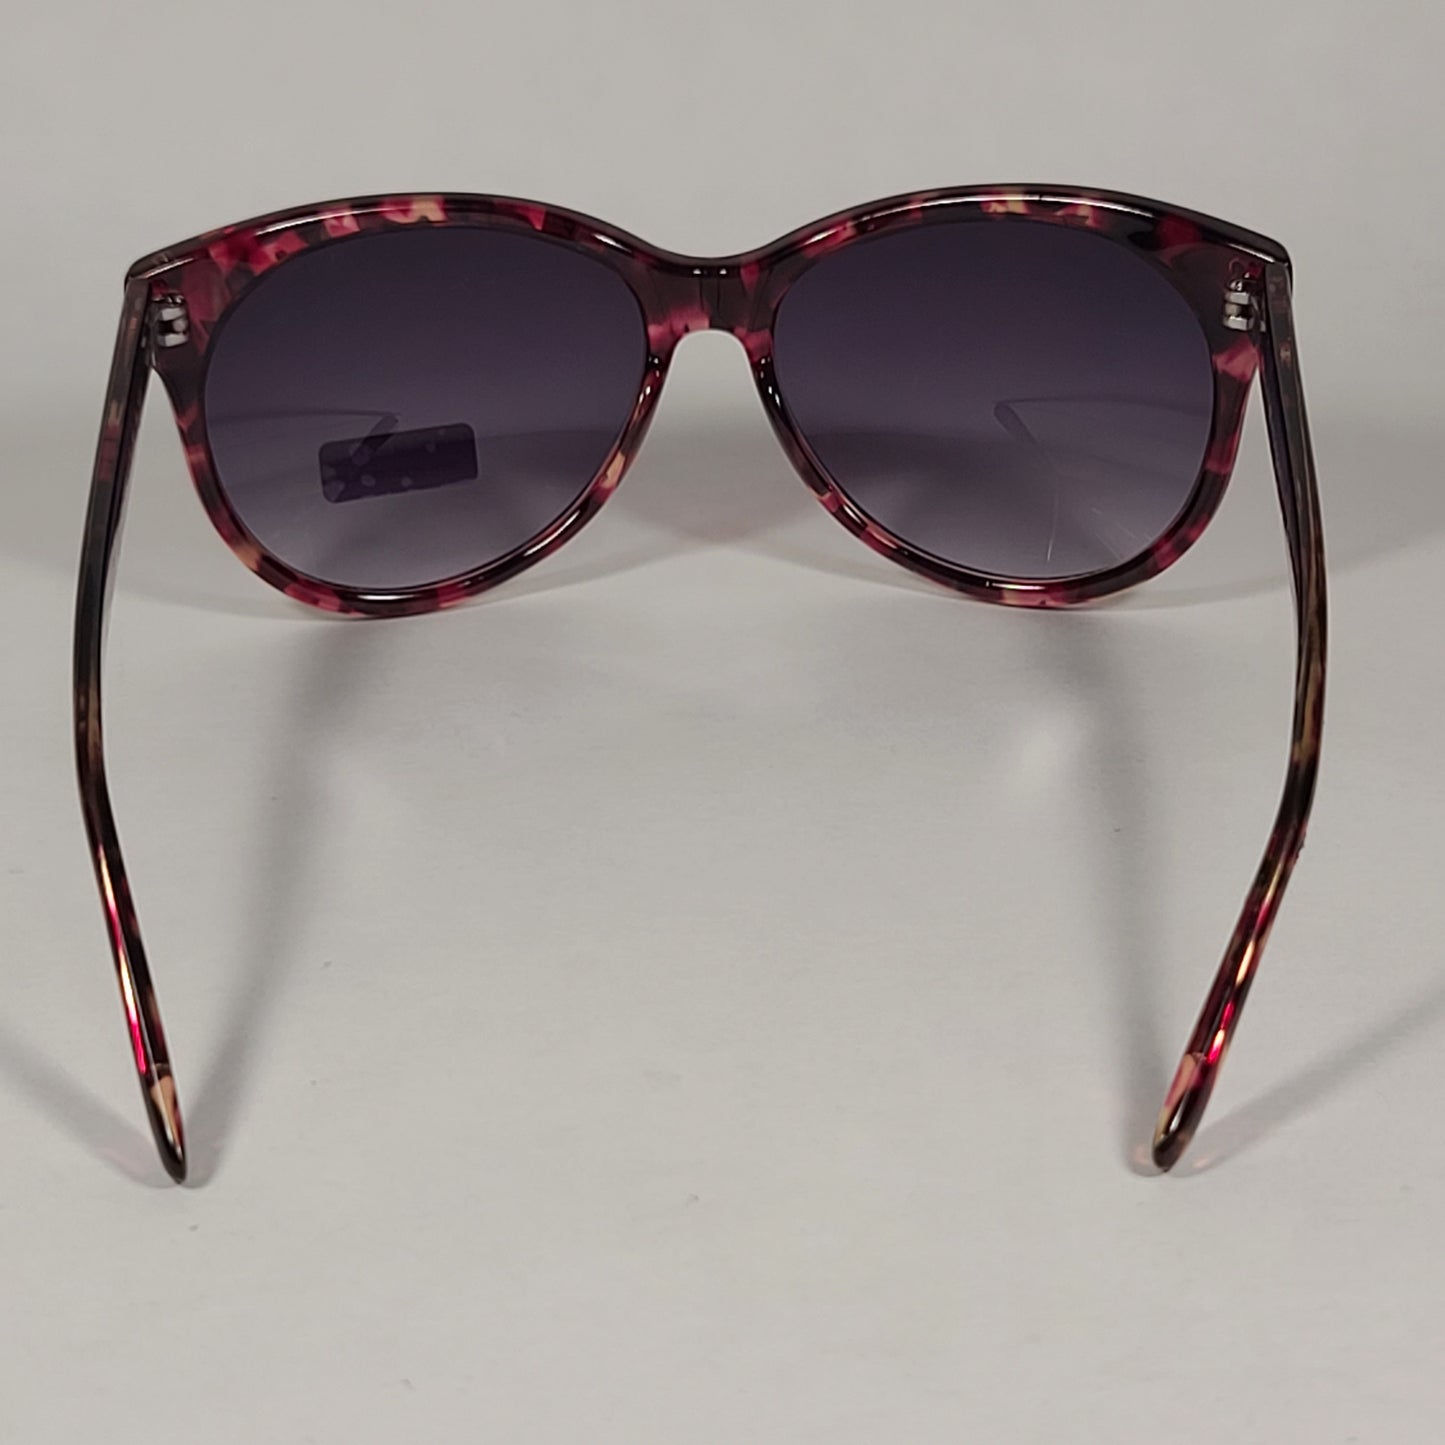 Tommy Hilfiger Pepper Sunglasses Red Tortoise Frame Gray Gradient Lens PEPPER WP OL512 - Sunglasses